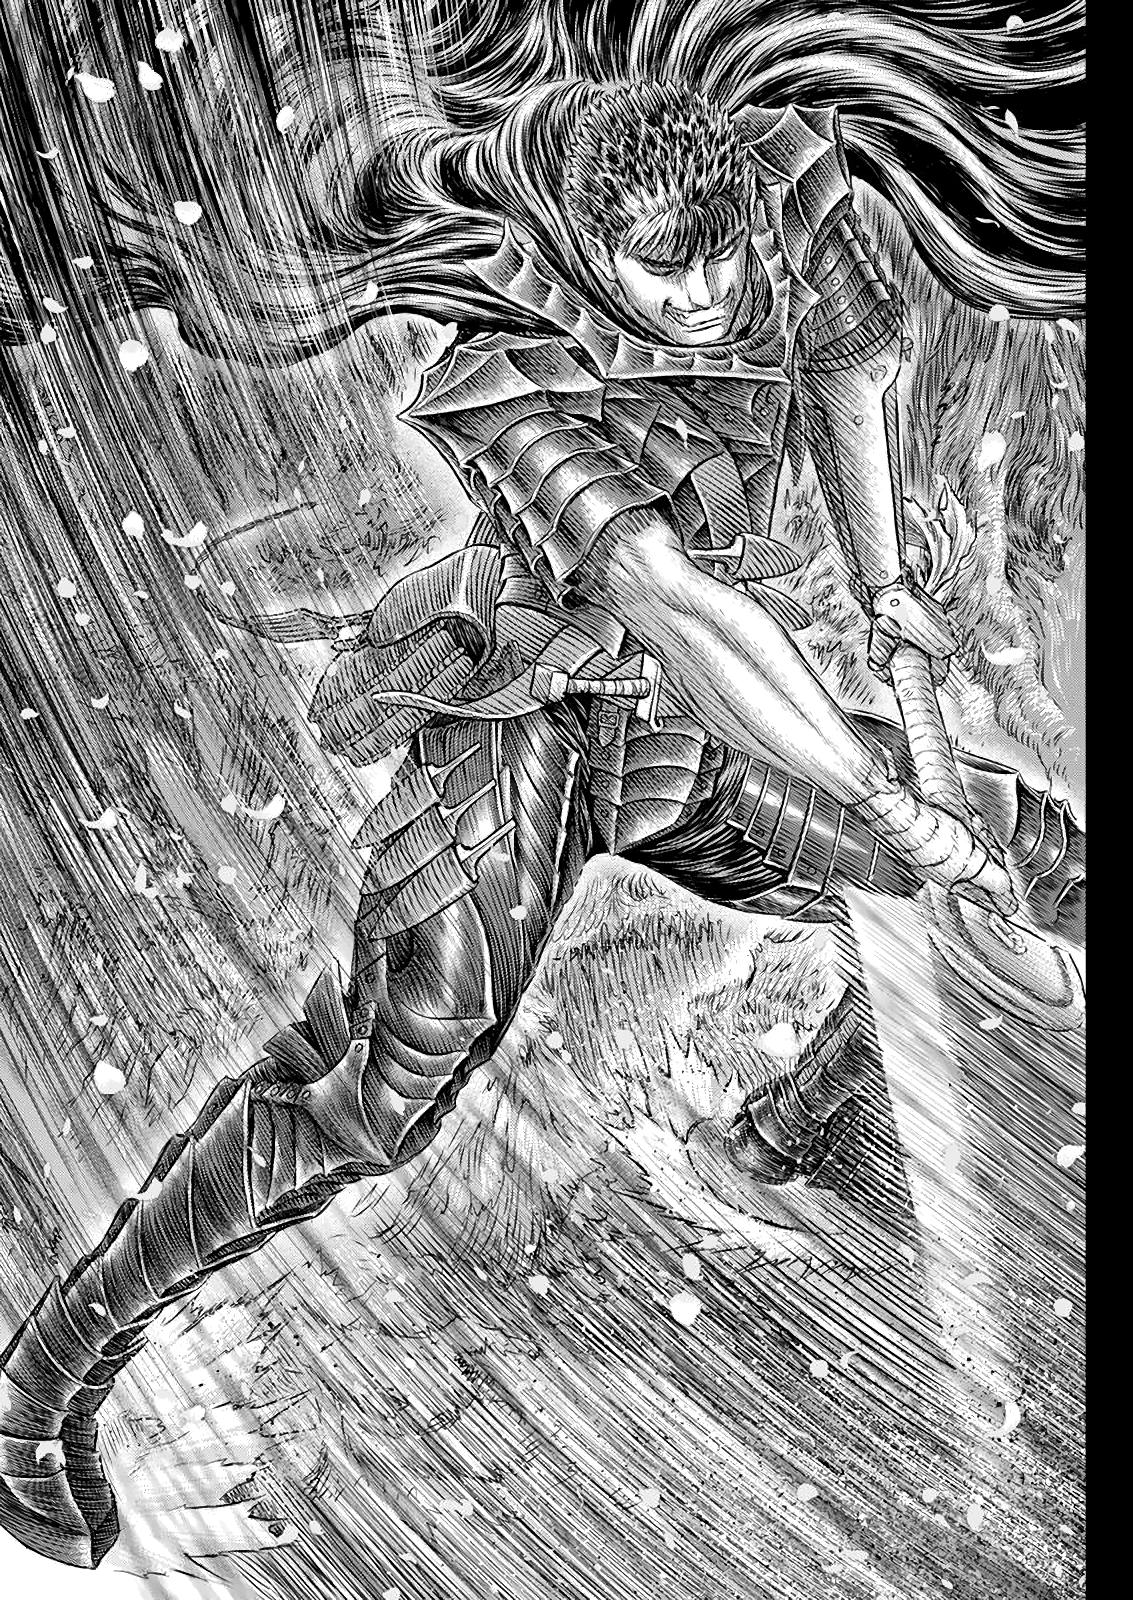 Berserk Manga Chapter 366 image 07